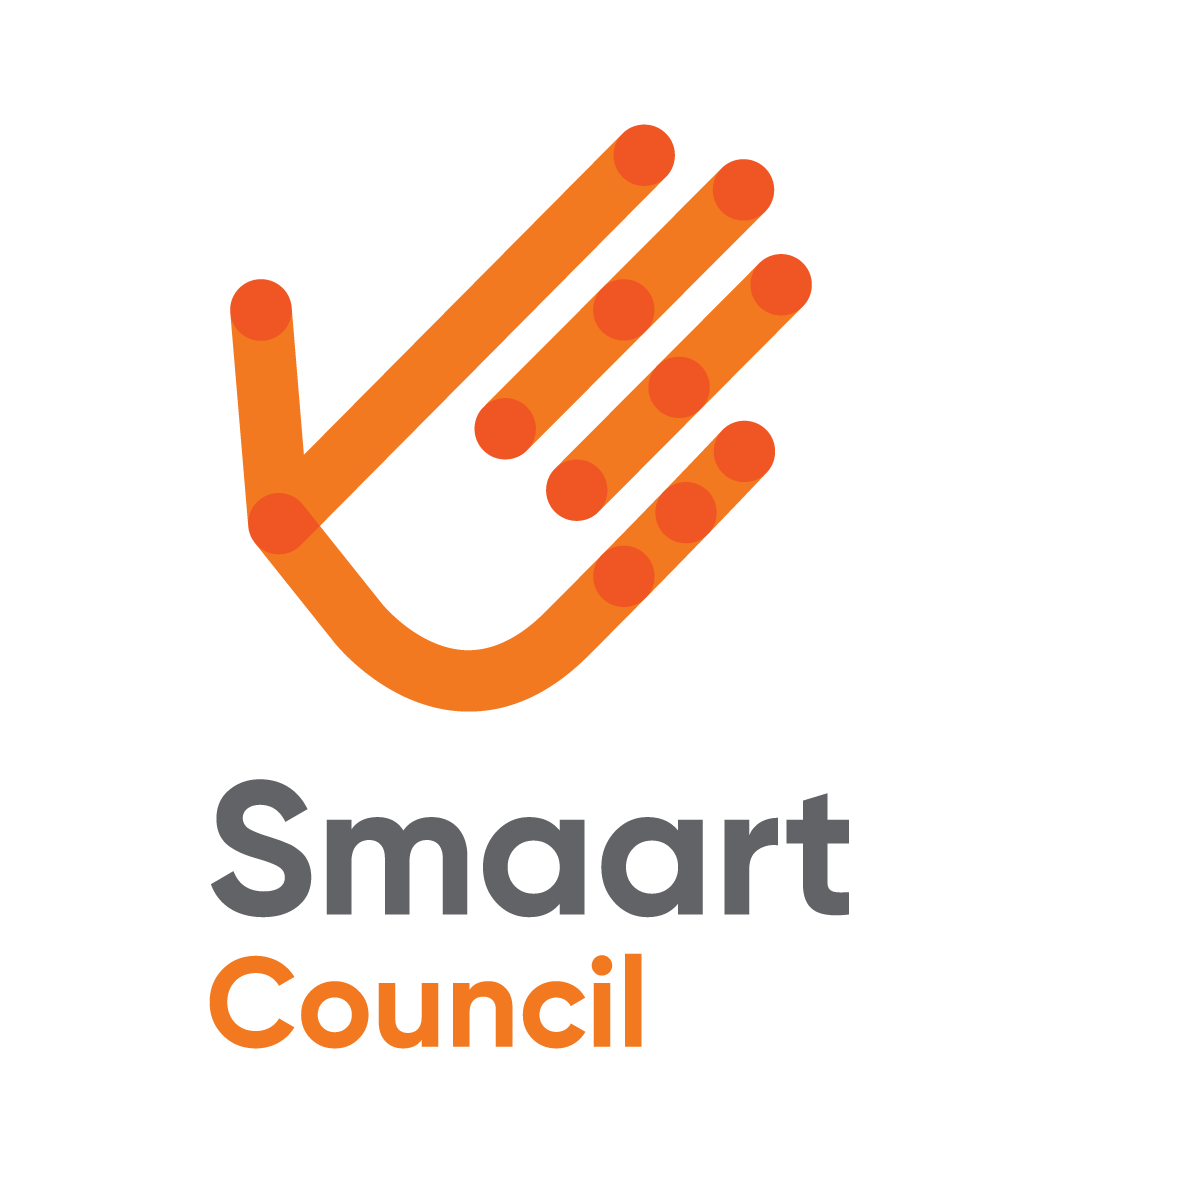 SMAaRT_Logo_Council_RGB